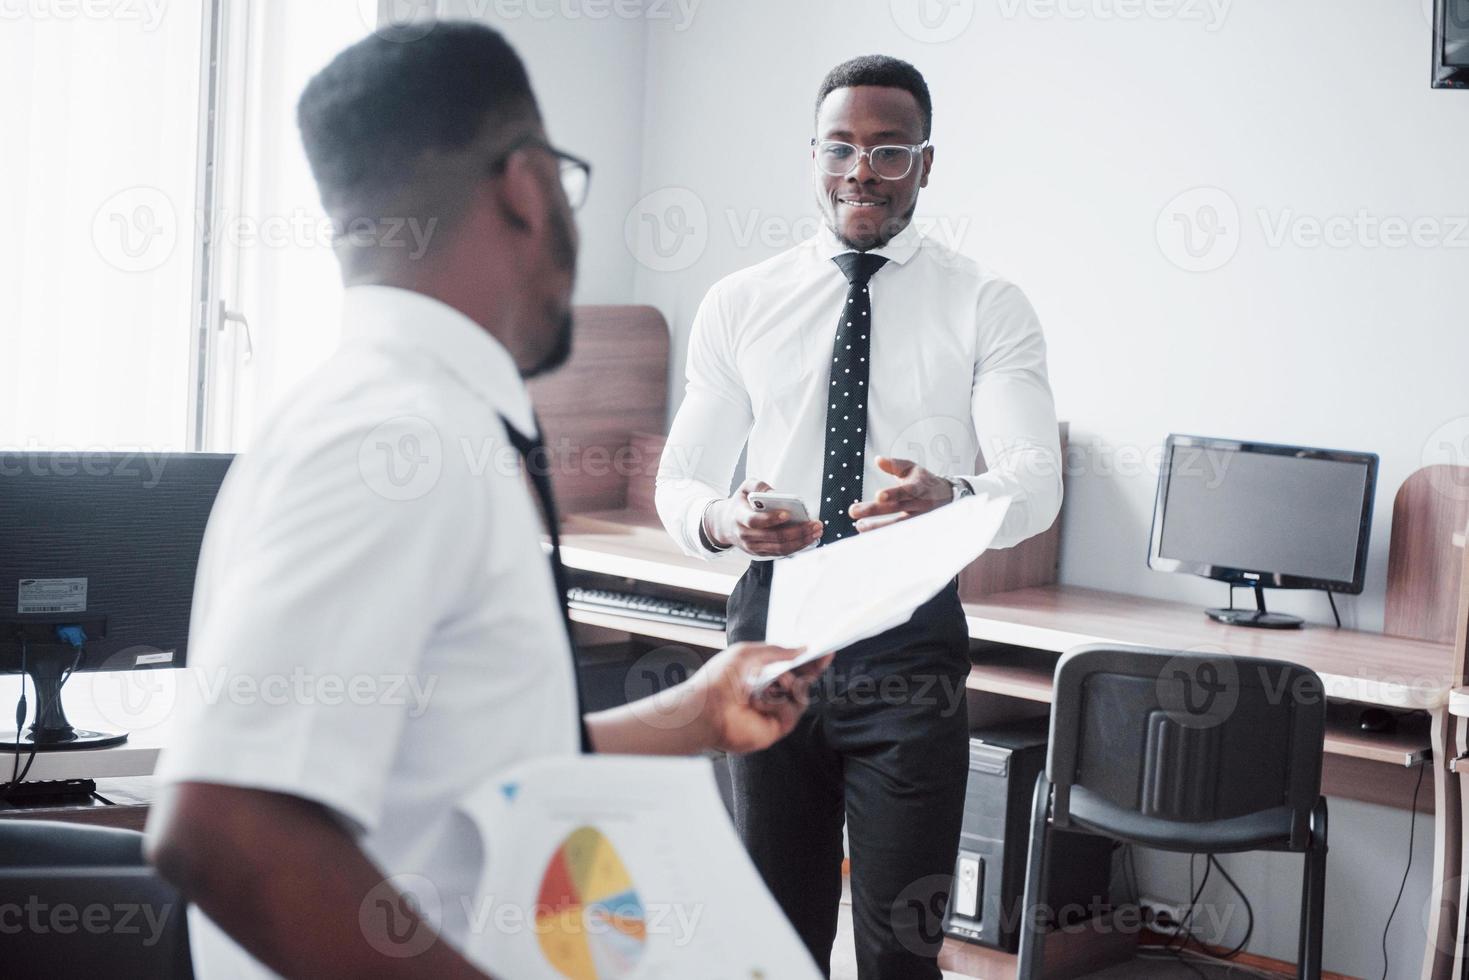 diskutera ett projekt. två svarta affärsmän i formalwear diskuterar något medan en av dem pekar på ett papper foto